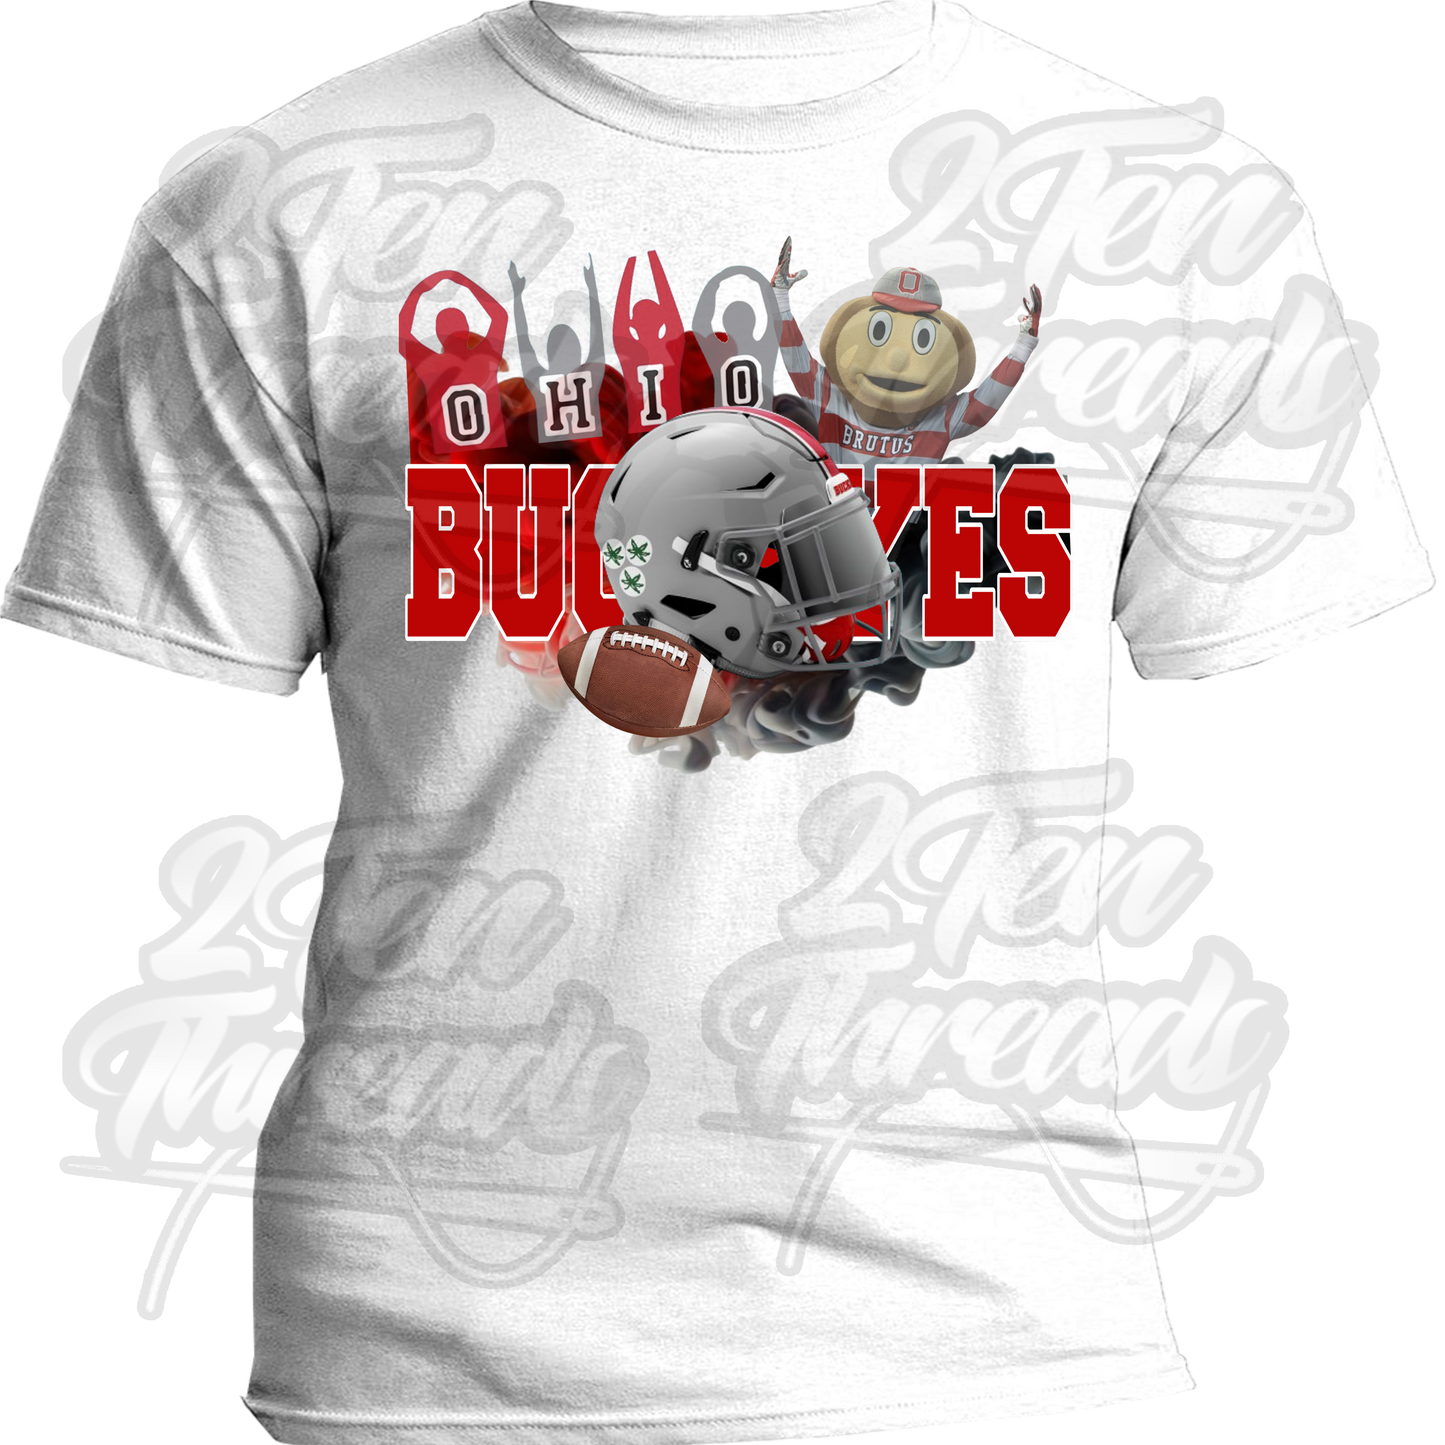 Ohio State Buckeyes Custom Shirt